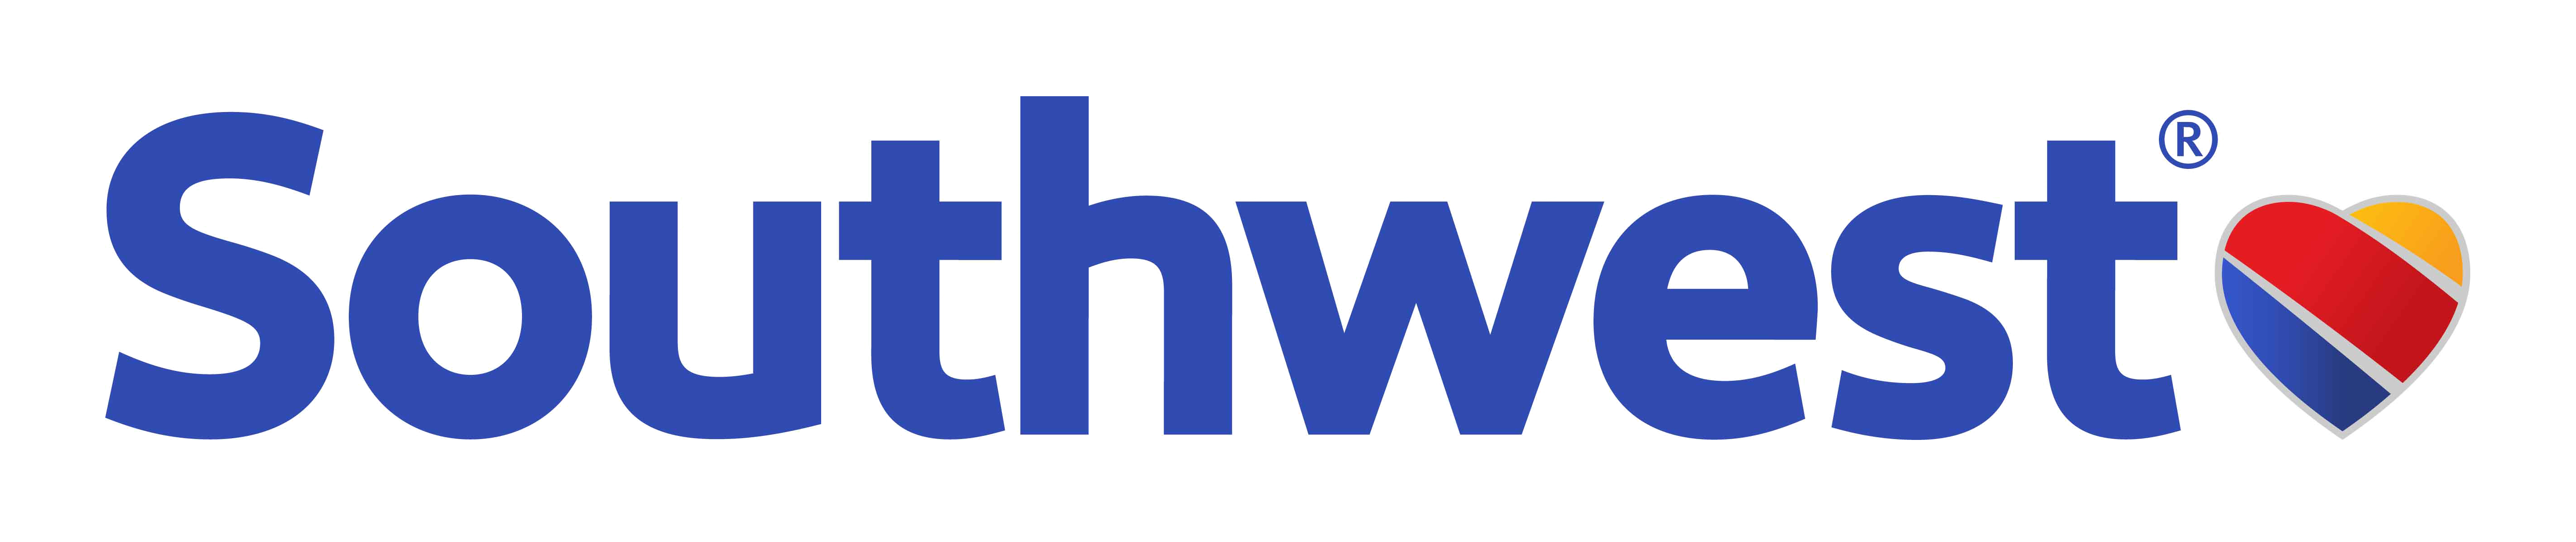 Southwest Brand Logo